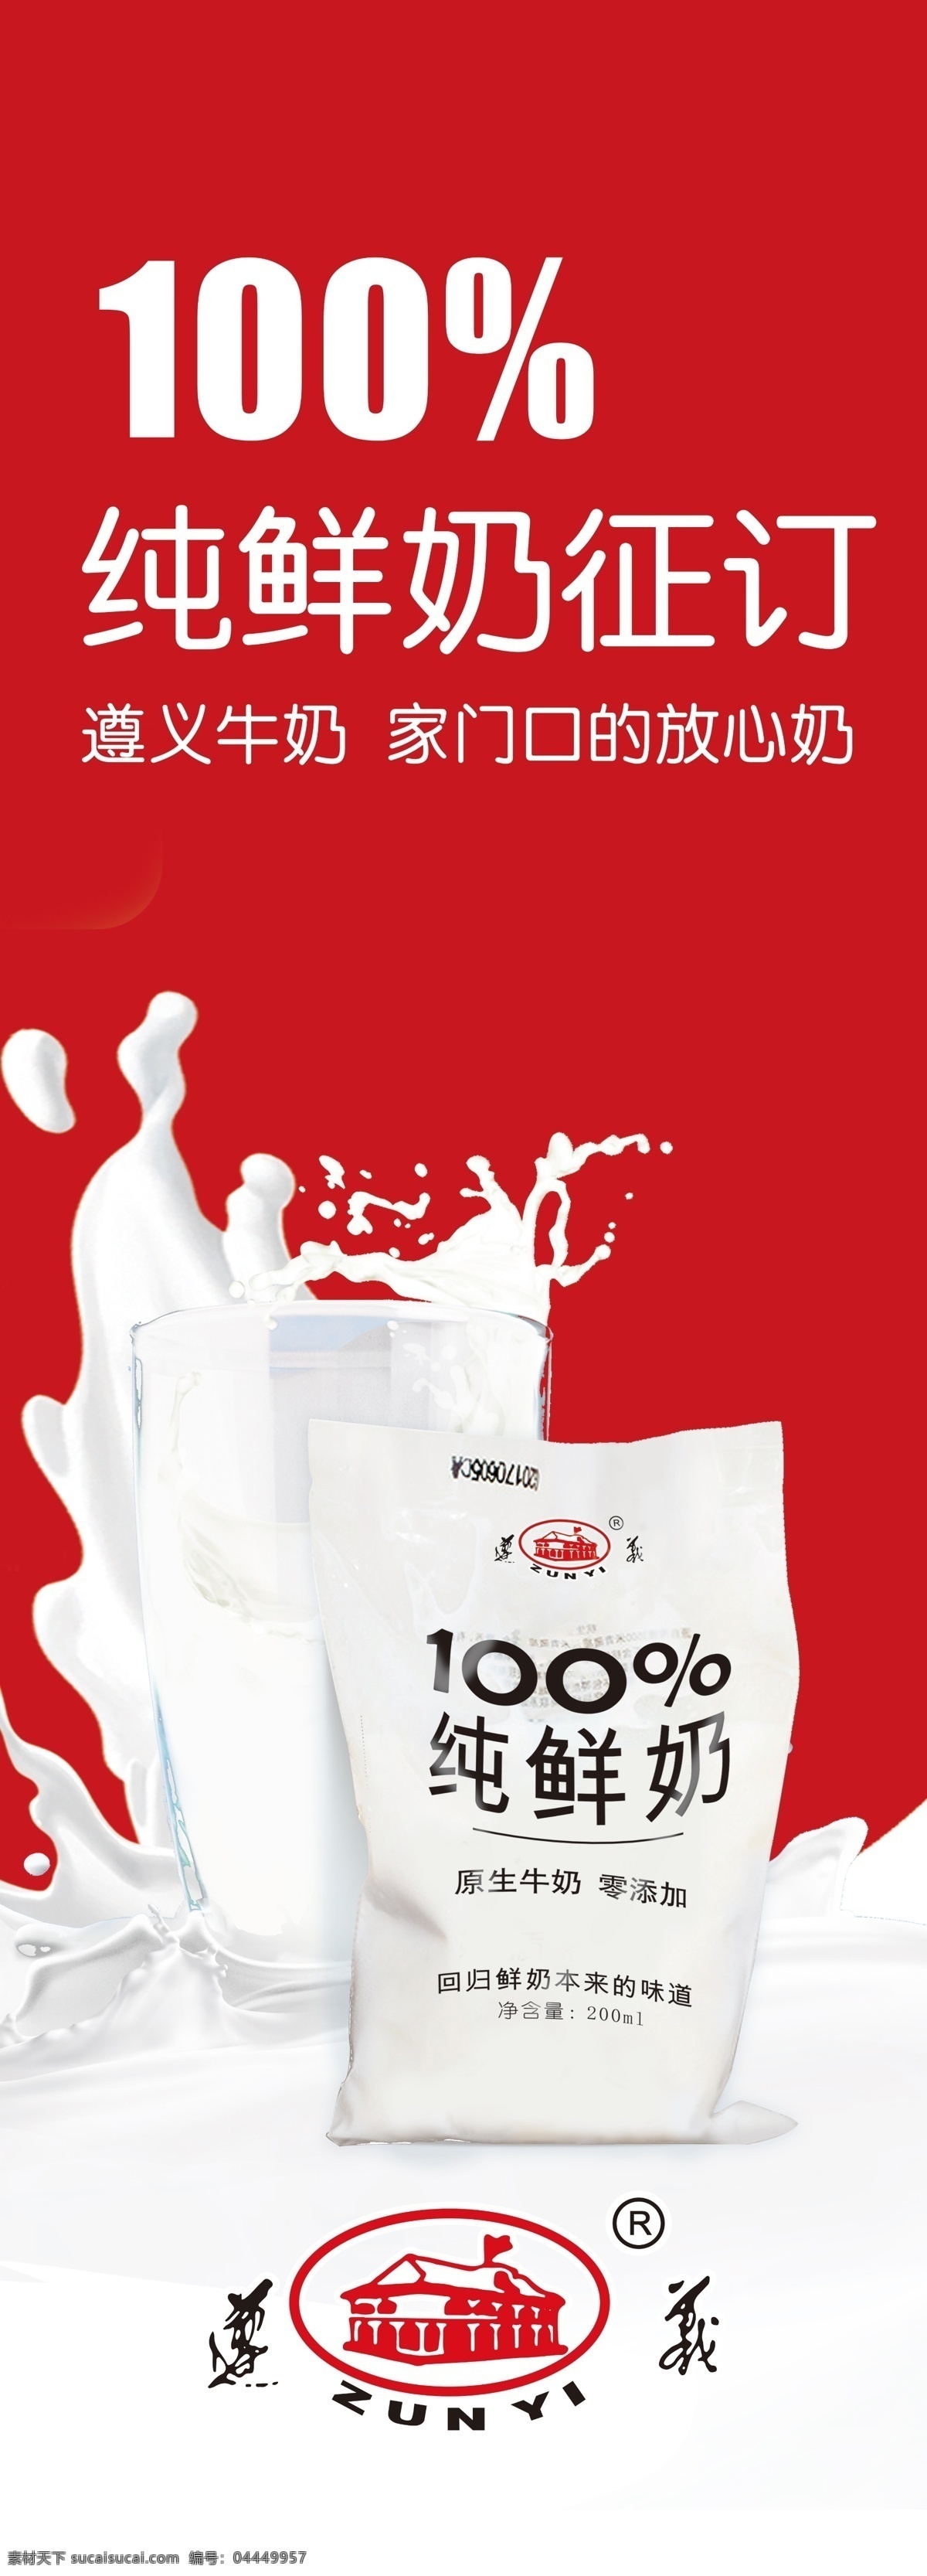 遵义牛奶 logo图像 logo 鲜奶 皇氏乳业集团 酸奶 室内广告设计